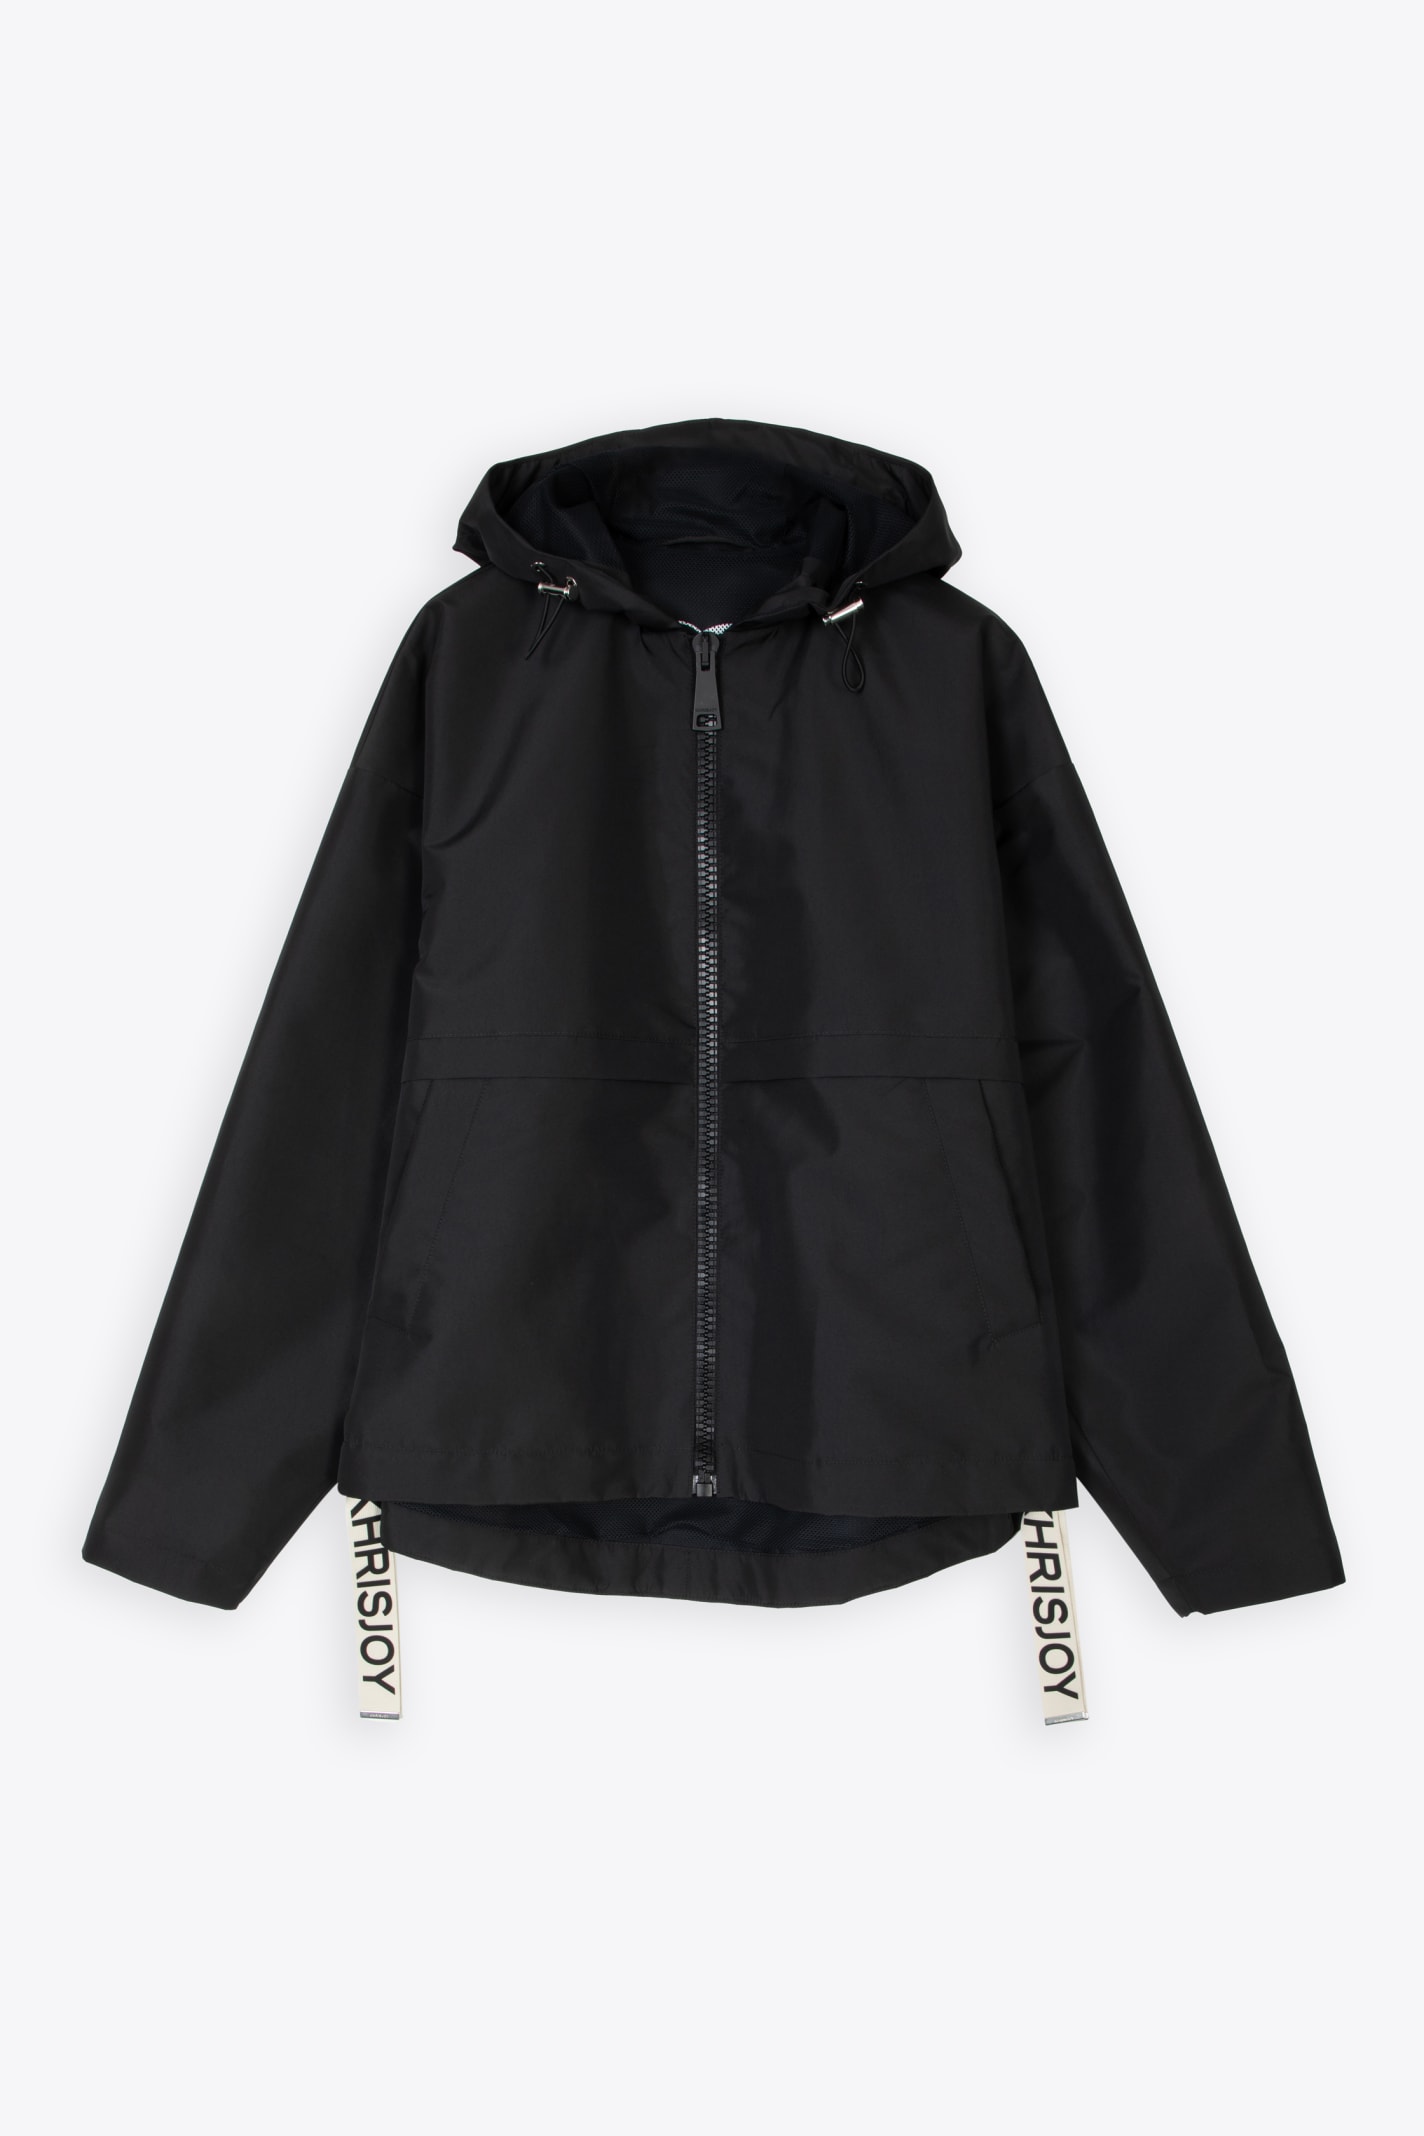 Shell Windbreaker Black nylon windproof hooded jacket - Shell Windbreaker